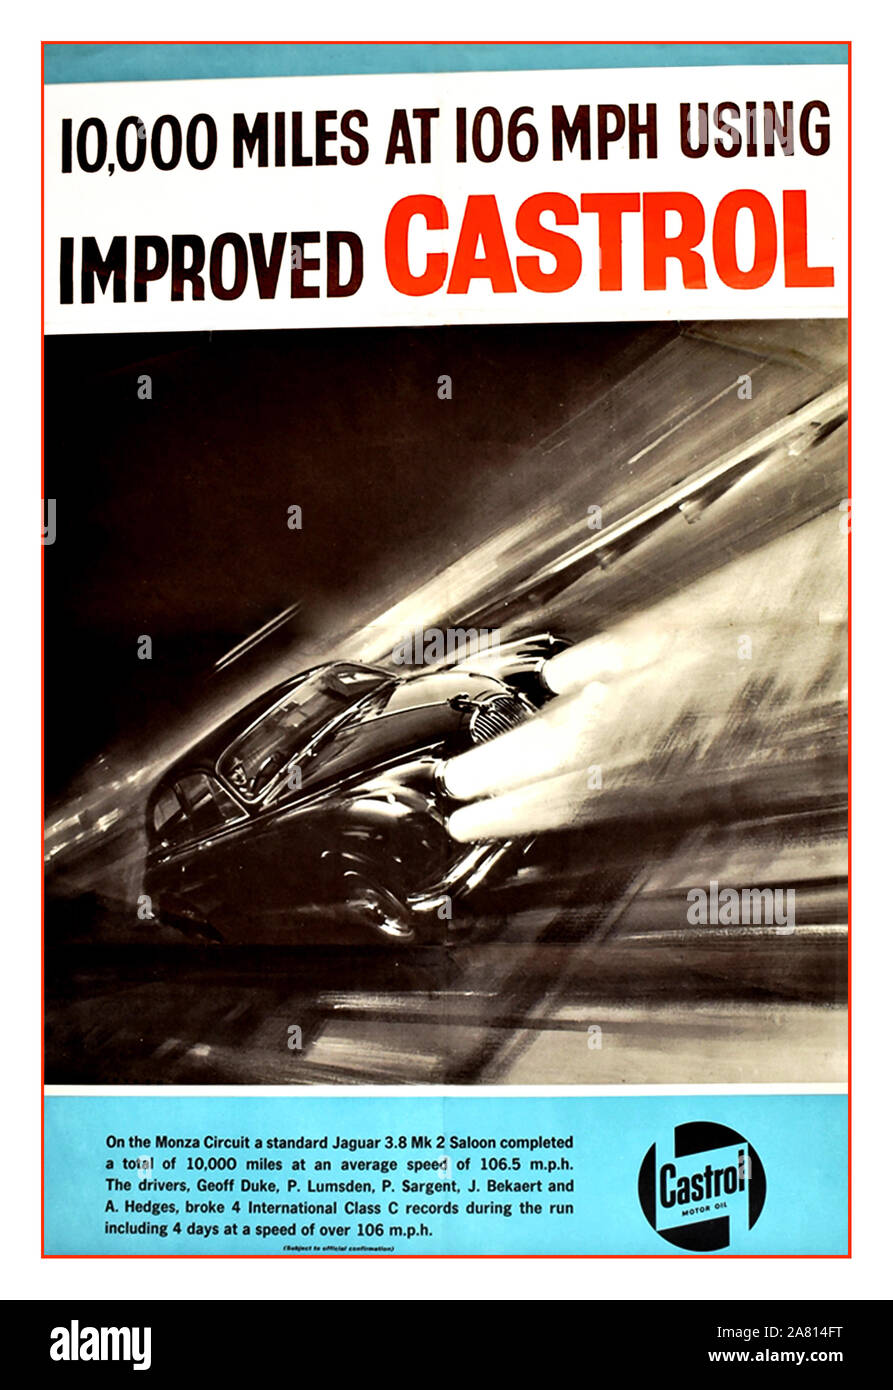 Jahrgang 1960 Castrol Öl Plakat mit Jaguar Limousine Mk2 auf Ausdauer Test in Monza mit Castrol Öl 10.000 Meilen bei 106 mph mit verbesserten Castrol Castrol" - Plakat für März 1963 Stockfoto